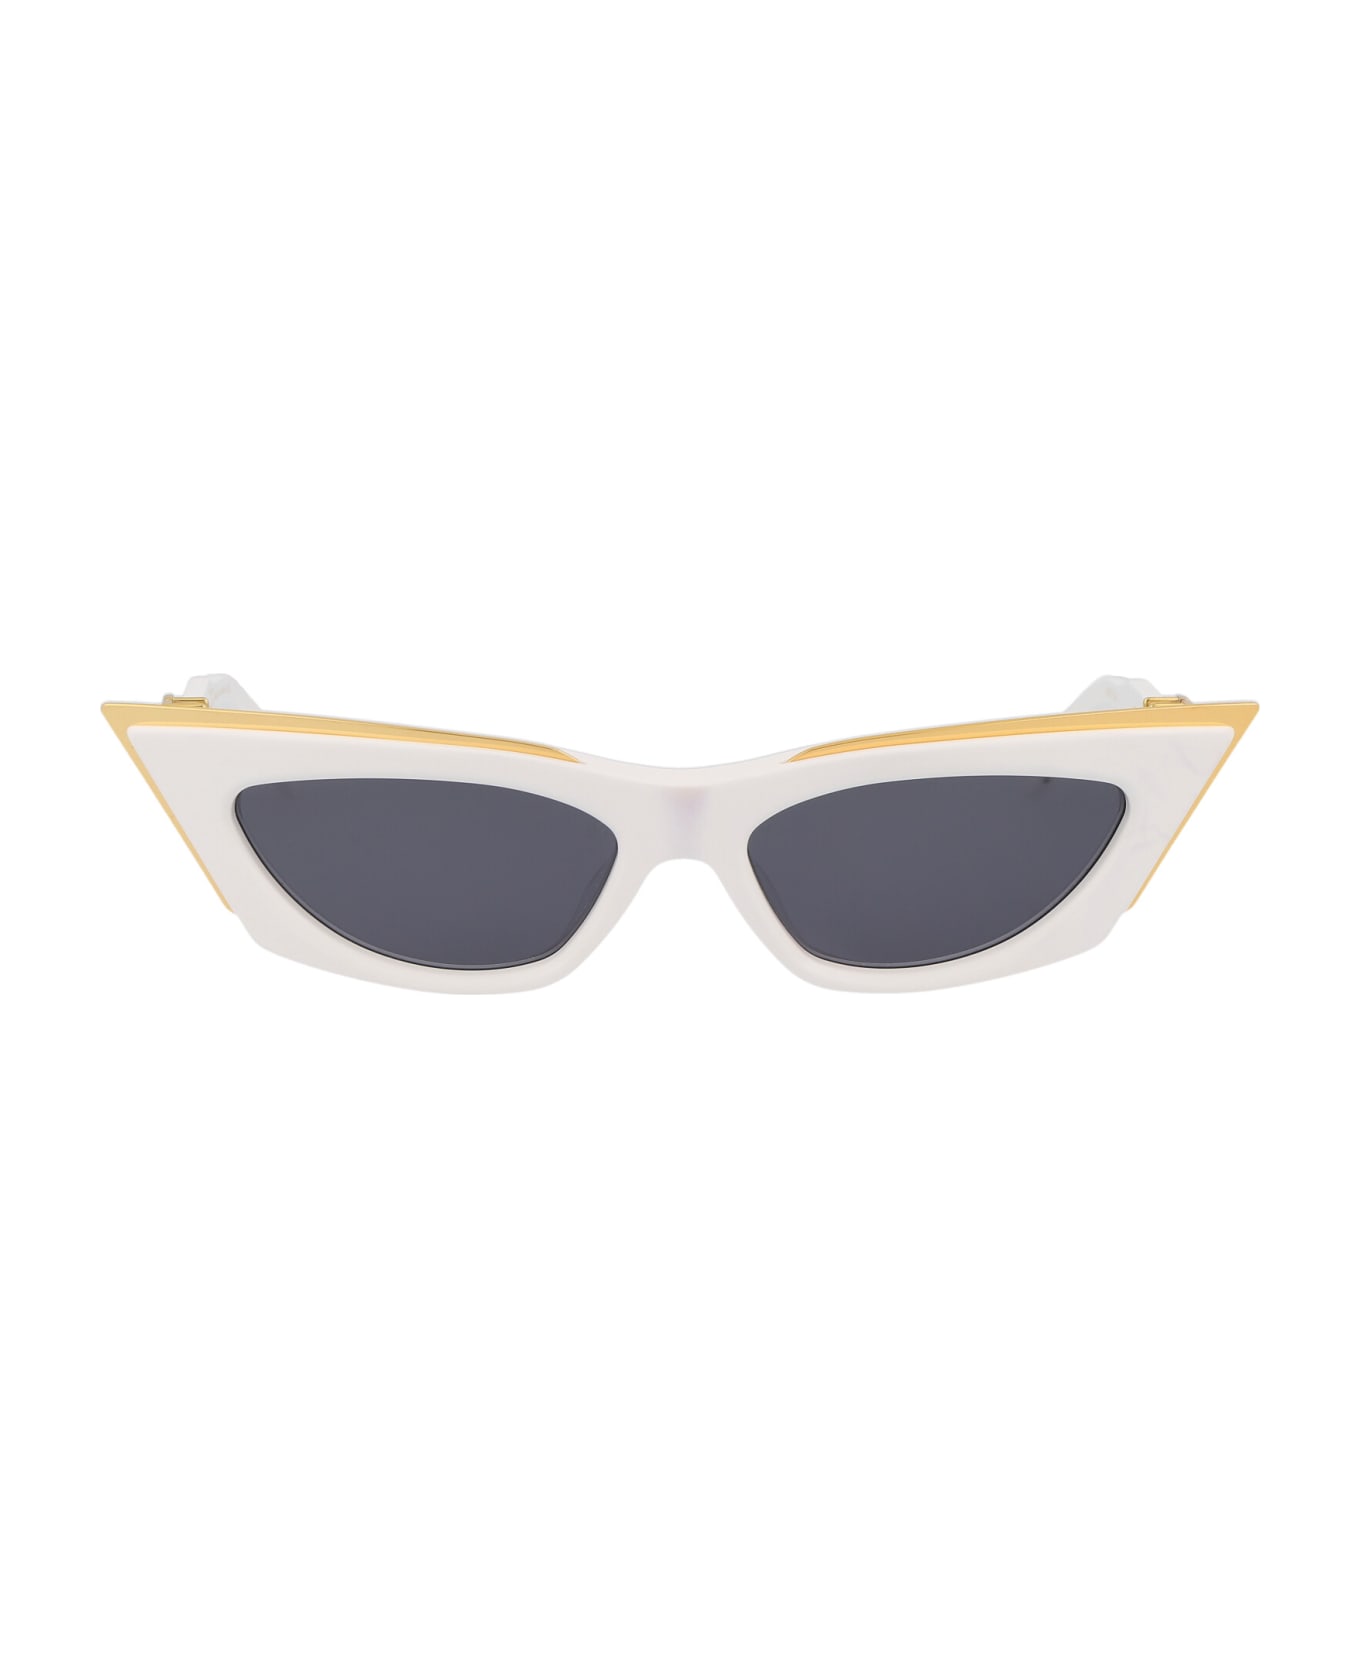 Valentino Eyewear V - Goldcut - I Sunglasses - White - Yellow Gold w/Dark Grey サングラス